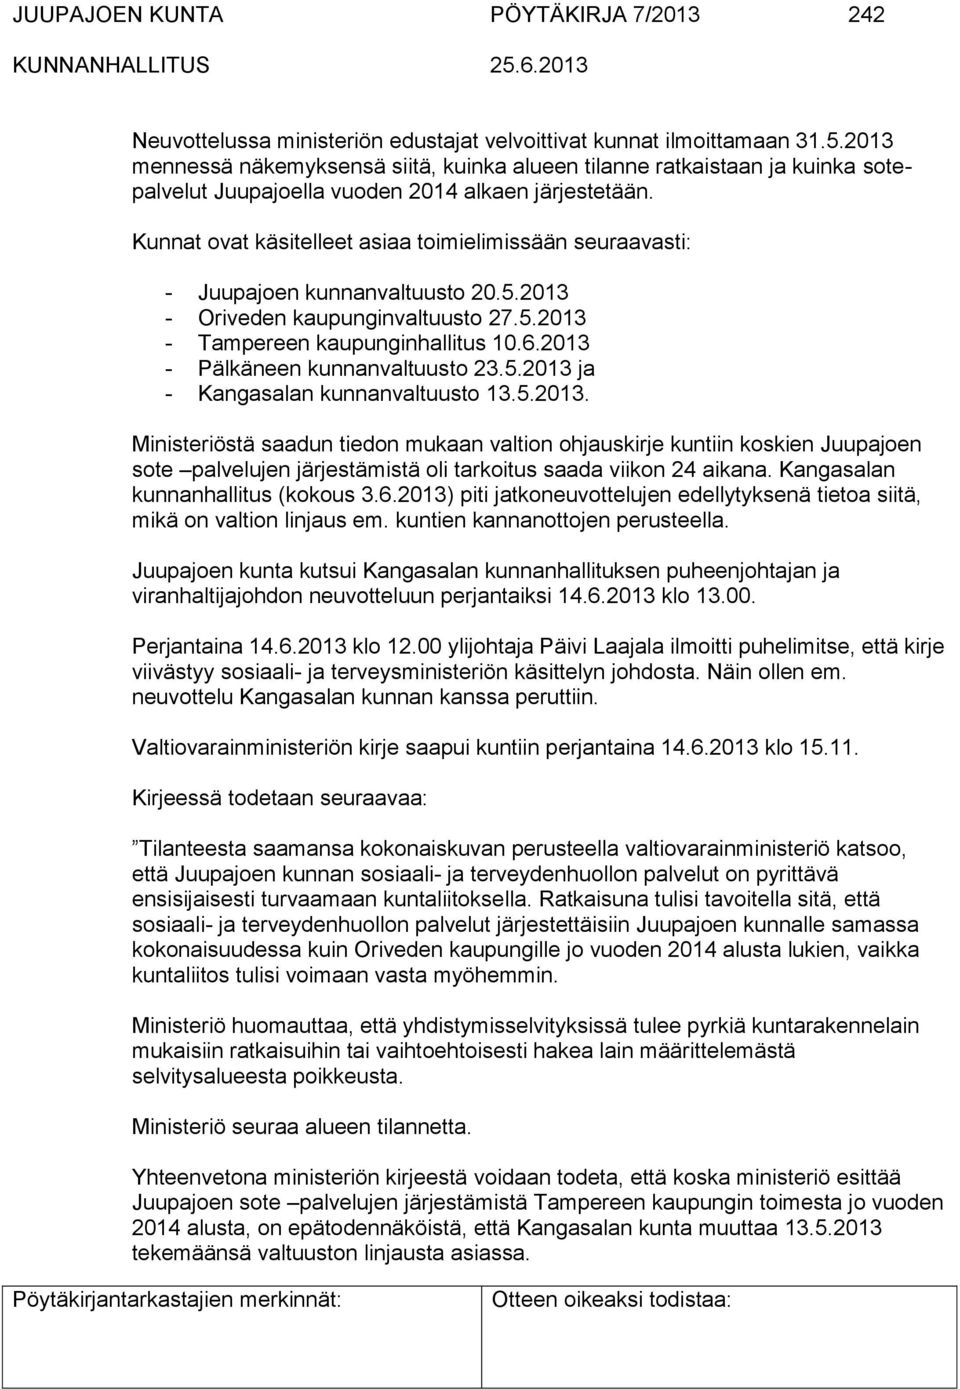 Kunnat ovat käsitelleet asiaa toimielimissään seuraavasti: - Juupajoen kunnanvaltuusto 20.5.2013 - Oriveden kaupunginvaltuusto 27.5.2013 - Tampereen kaupunginhallitus 10.6.